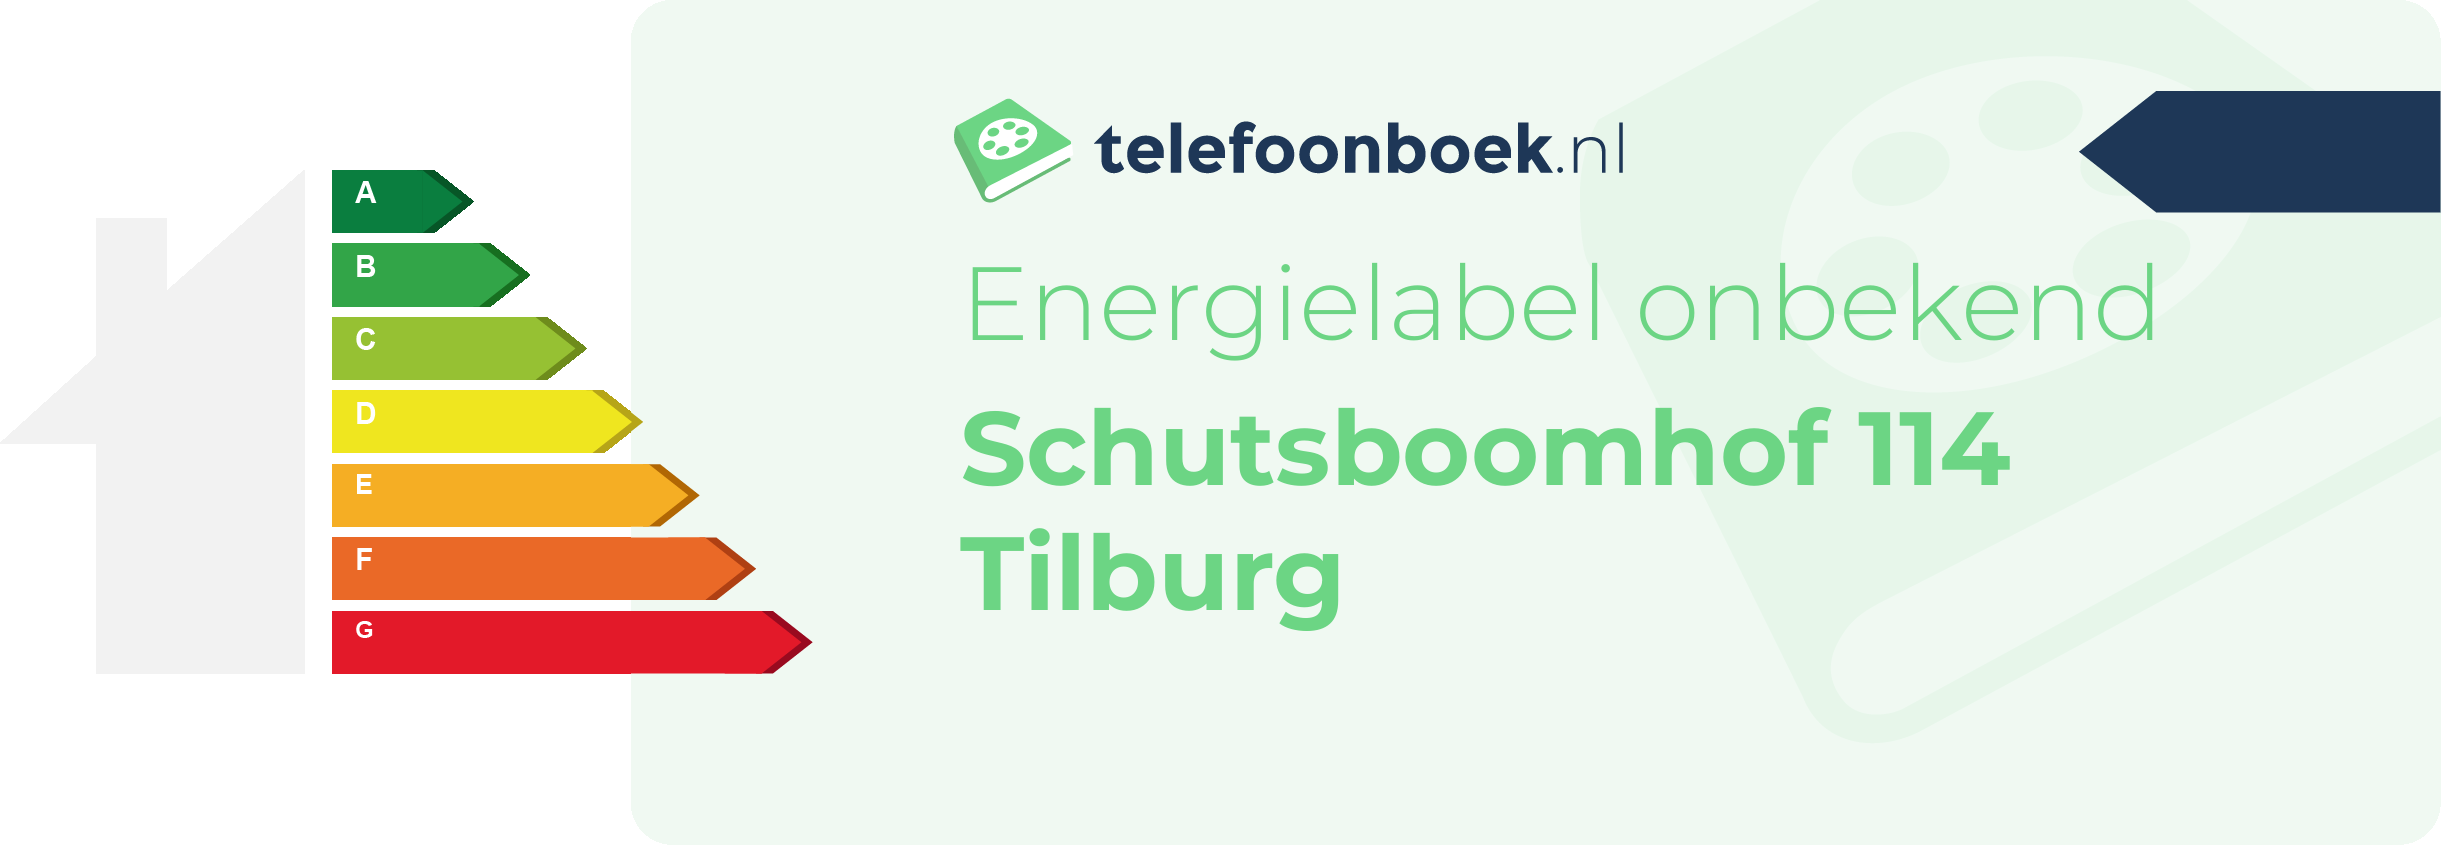 Energielabel Schutsboomhof 114 Tilburg